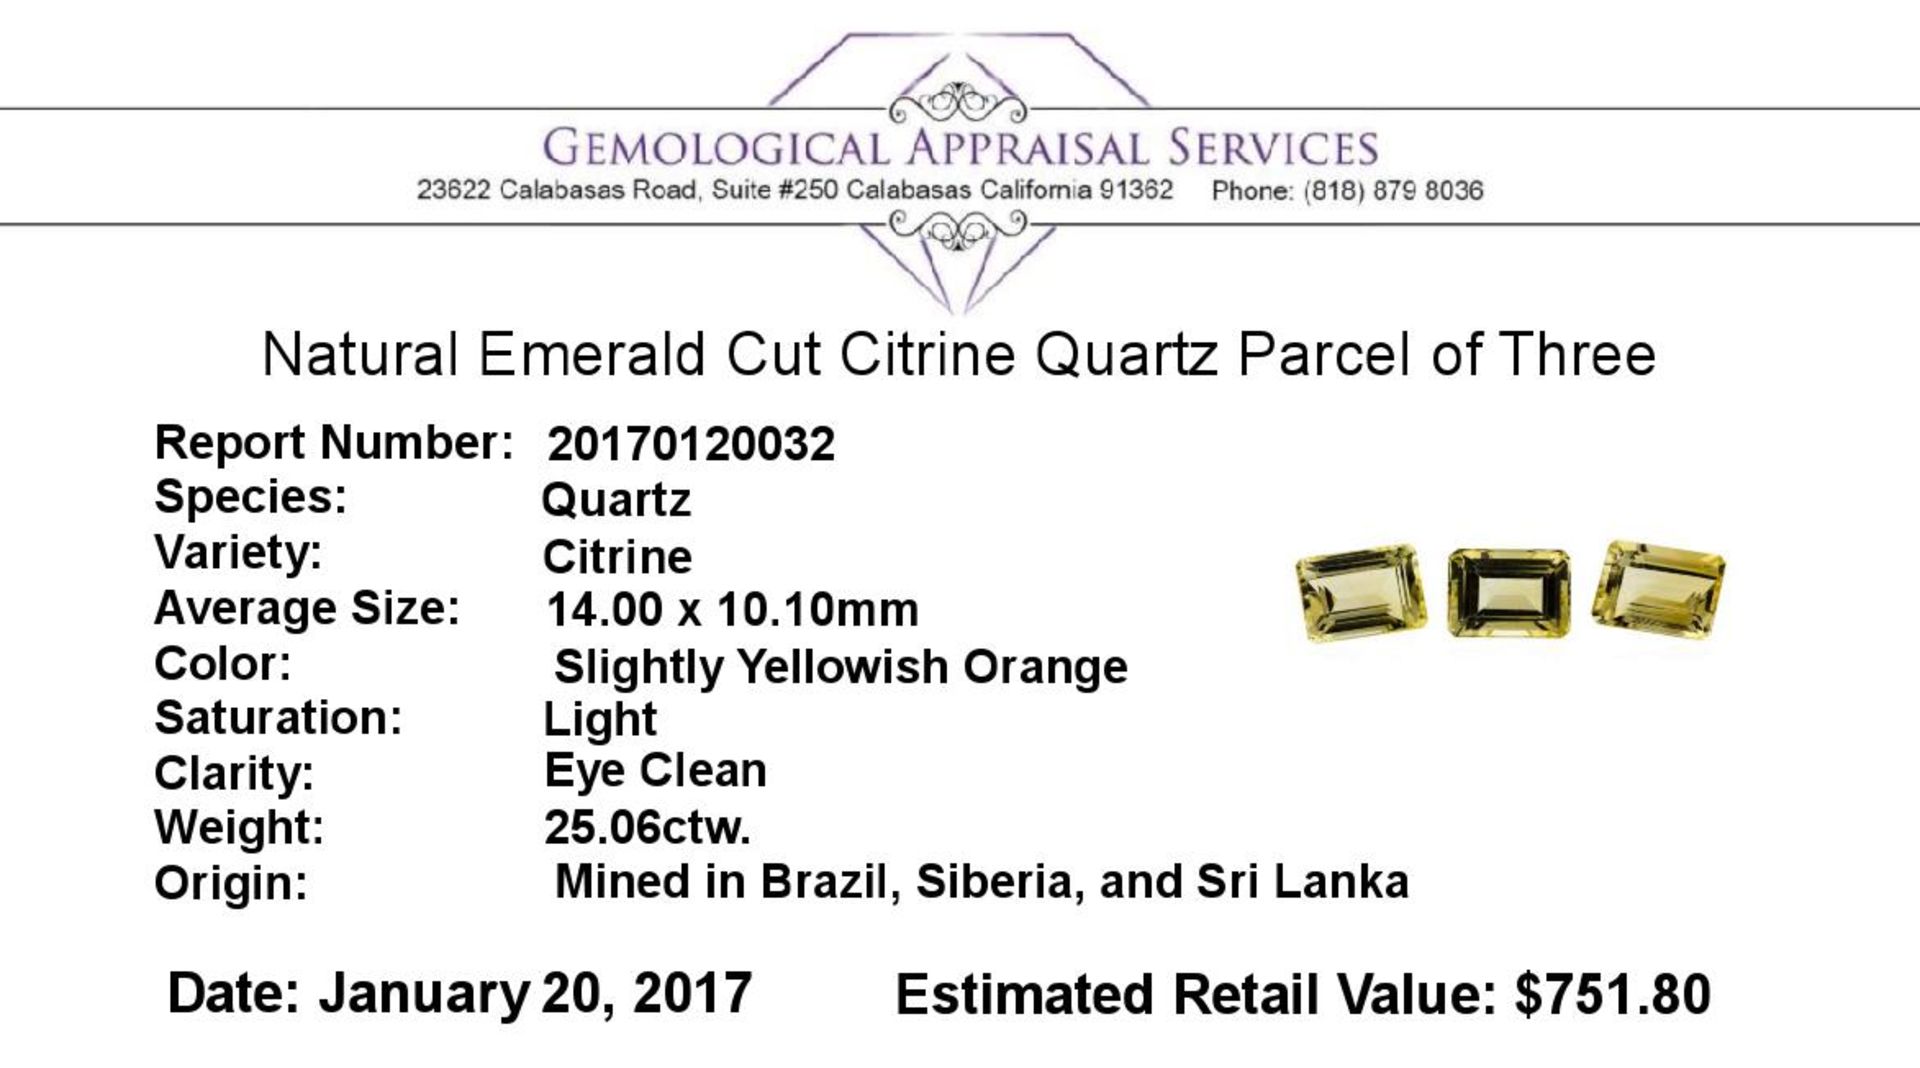 25.06ctw.Natural Emerald Cut Citrine Quartz Parcel of Three - Image 3 of 3